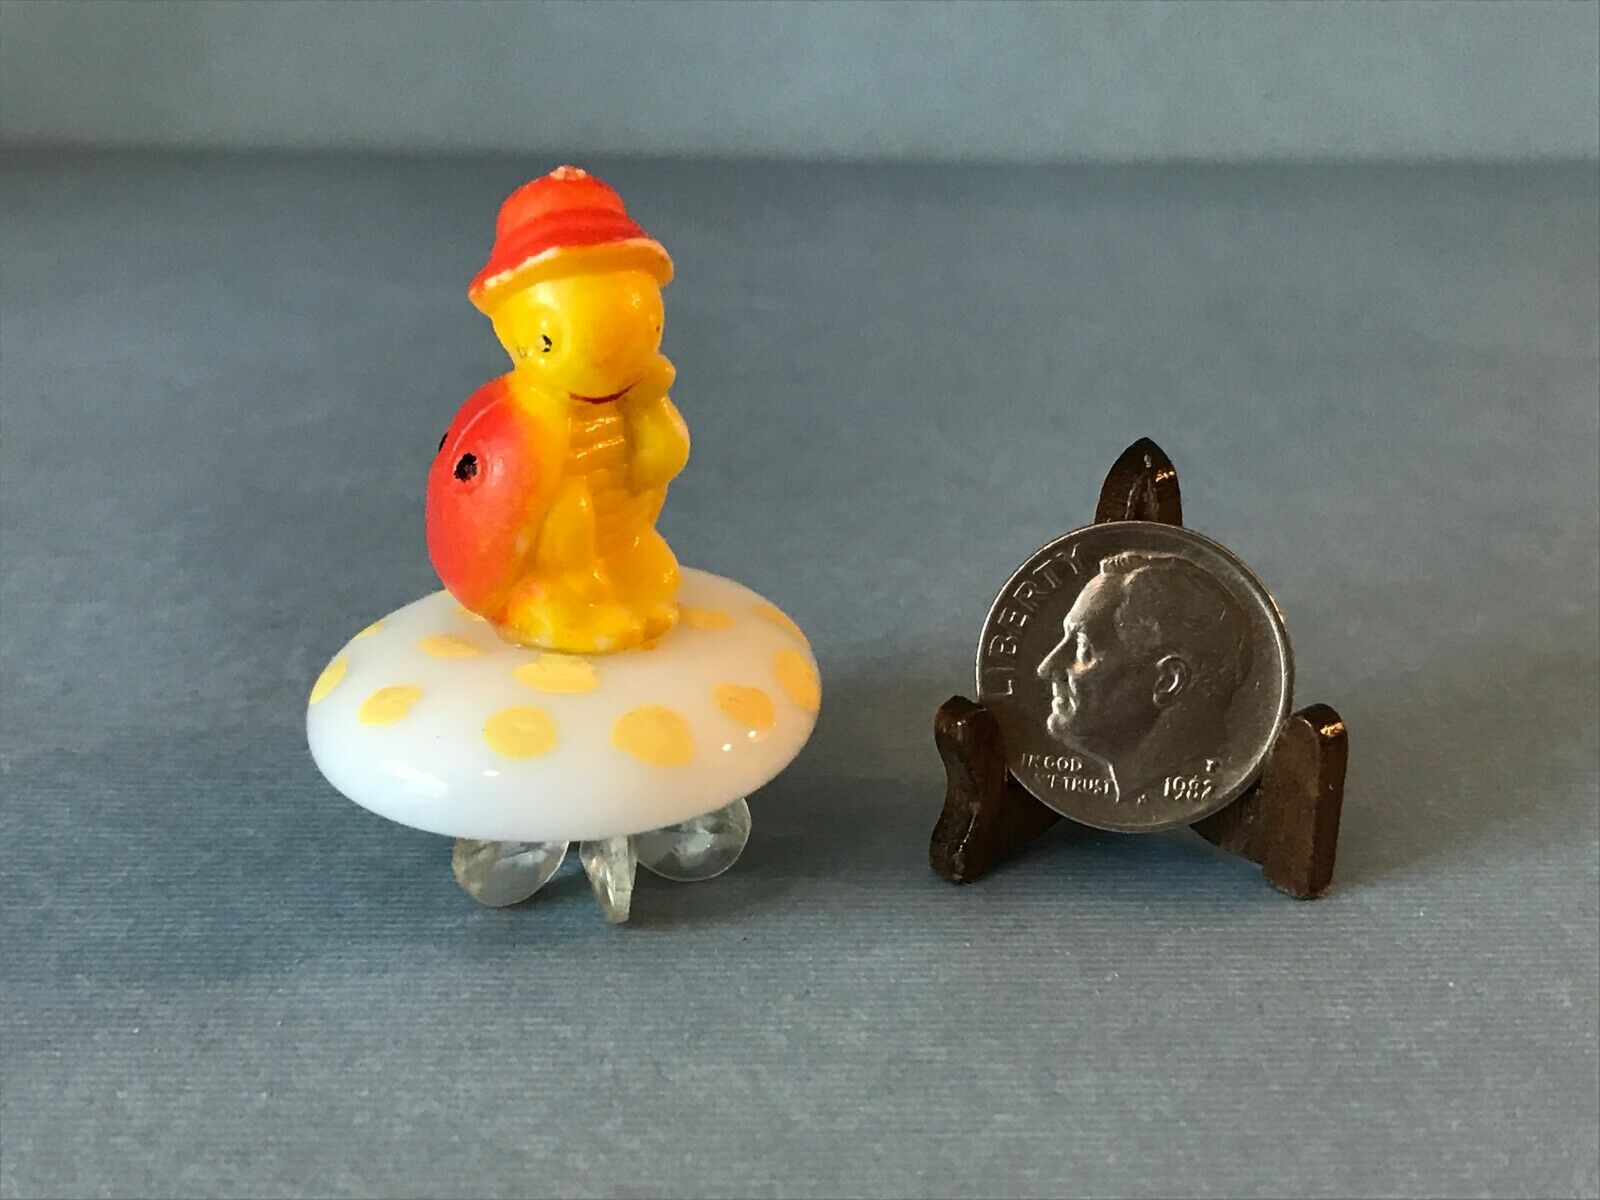 Vintage Miniature Plastic Ladybug Turtle On Mushroom Figurine Josef Originals?